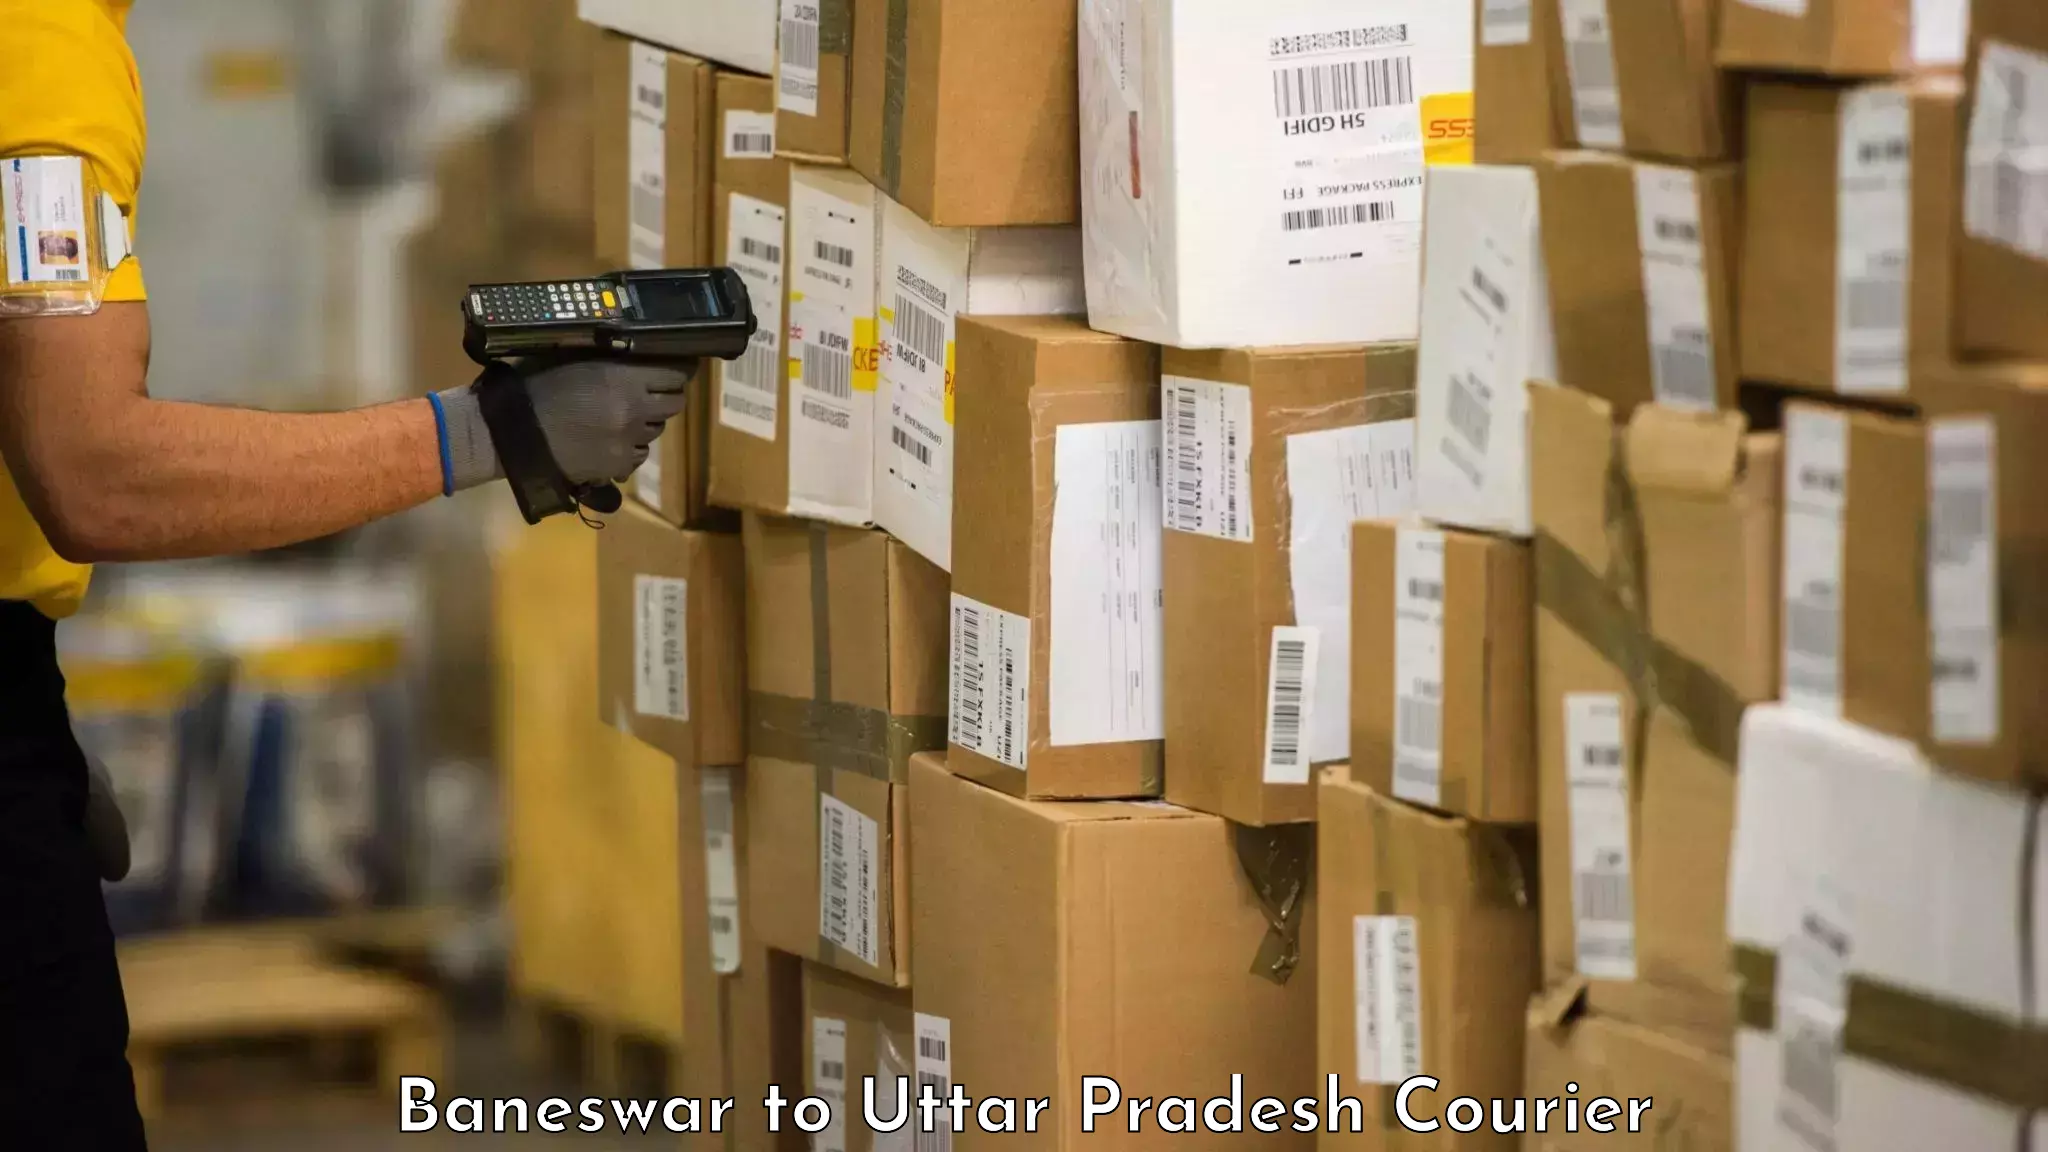 Luggage transit service Baneswar to Uttar Pradesh